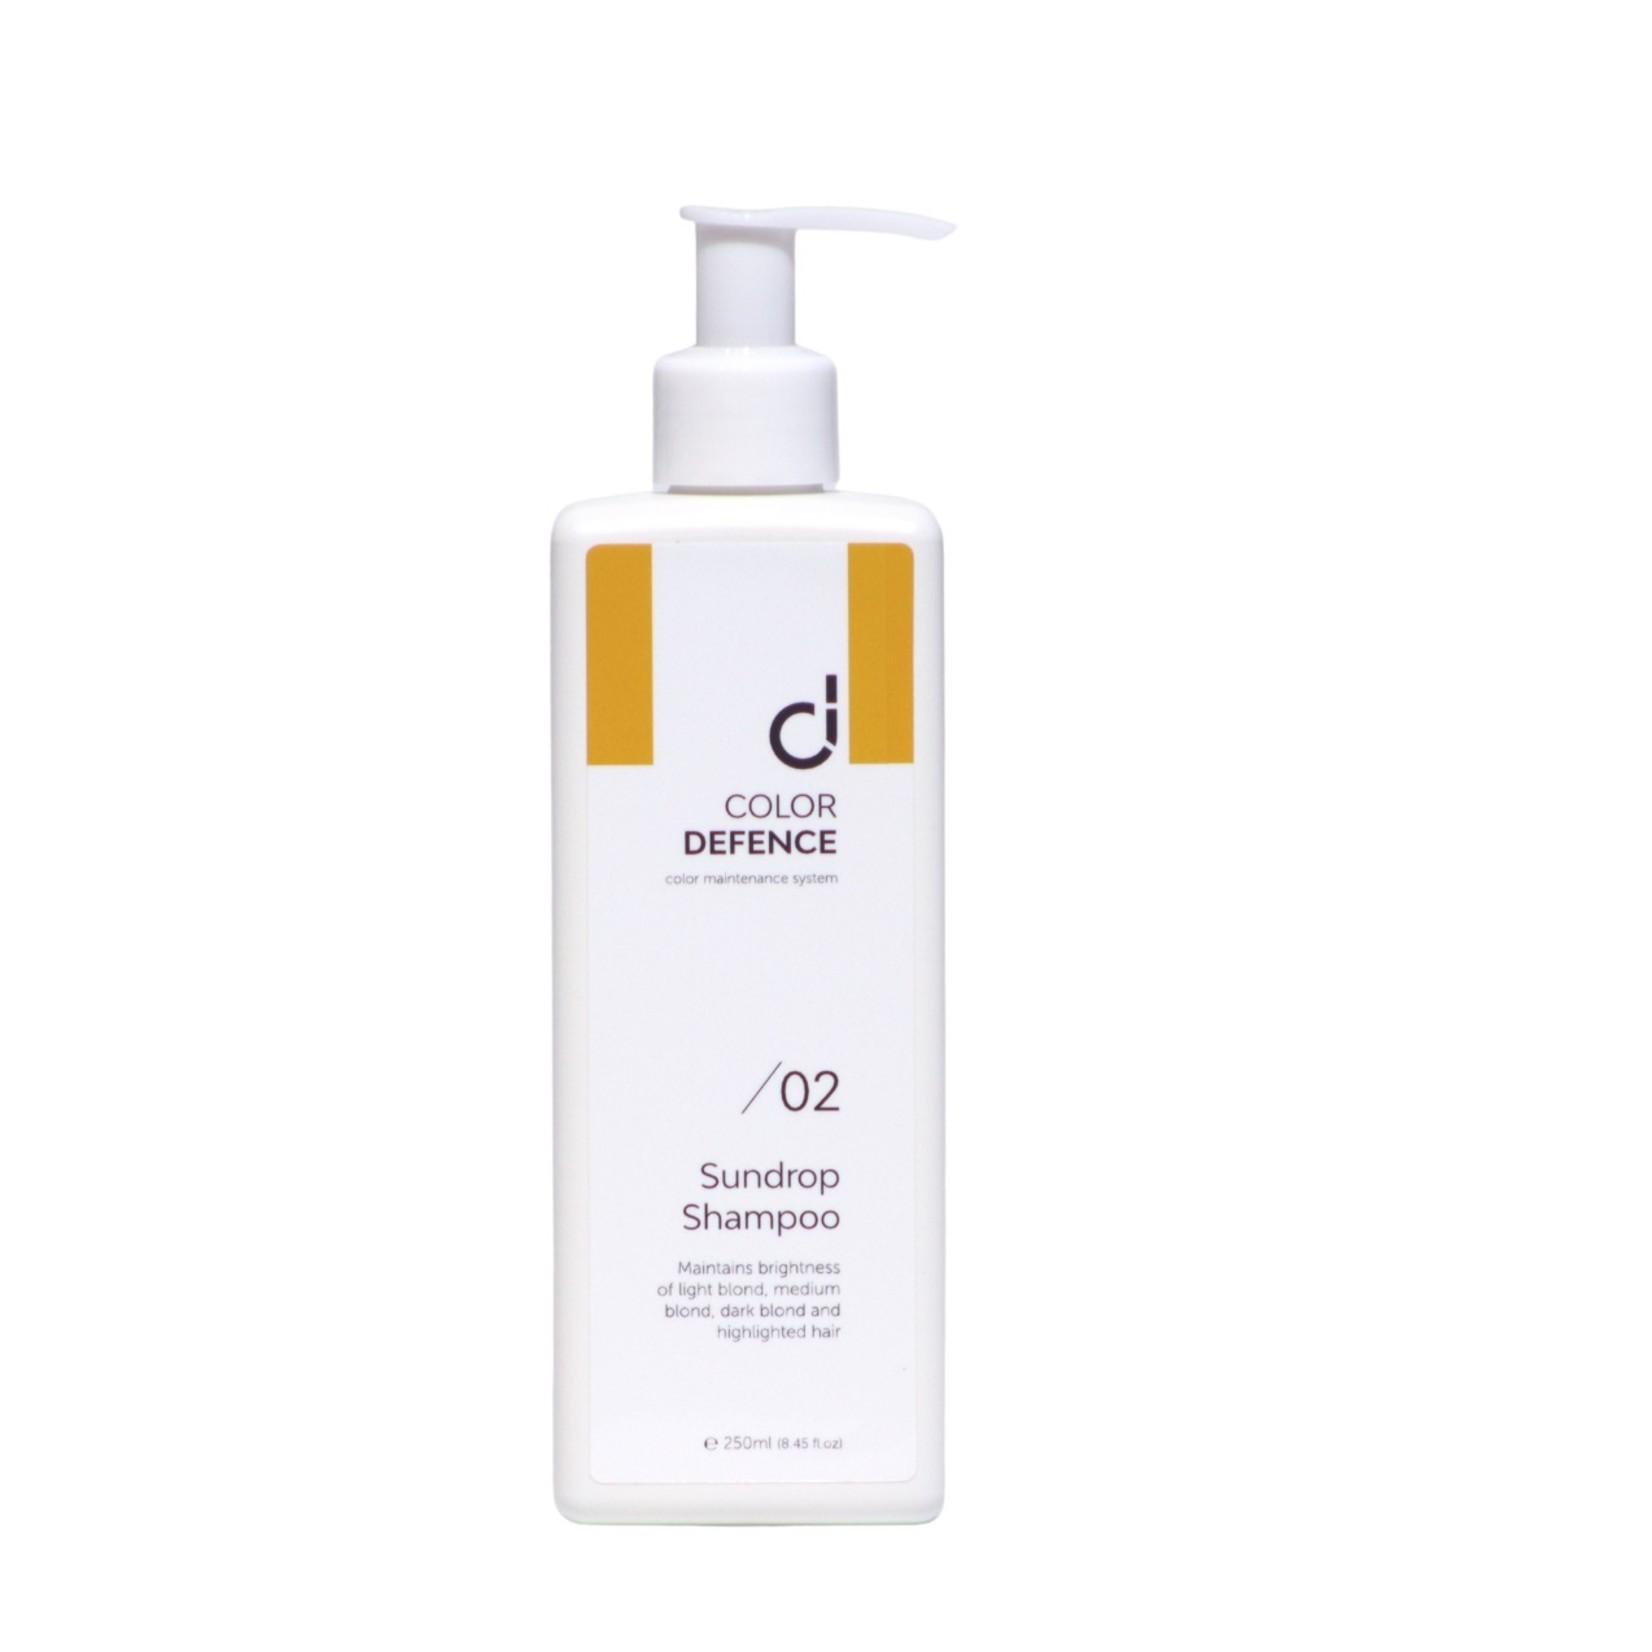 Color Defense Sundrop Shampoo Color Defence 250ml (voor warm goud haar)